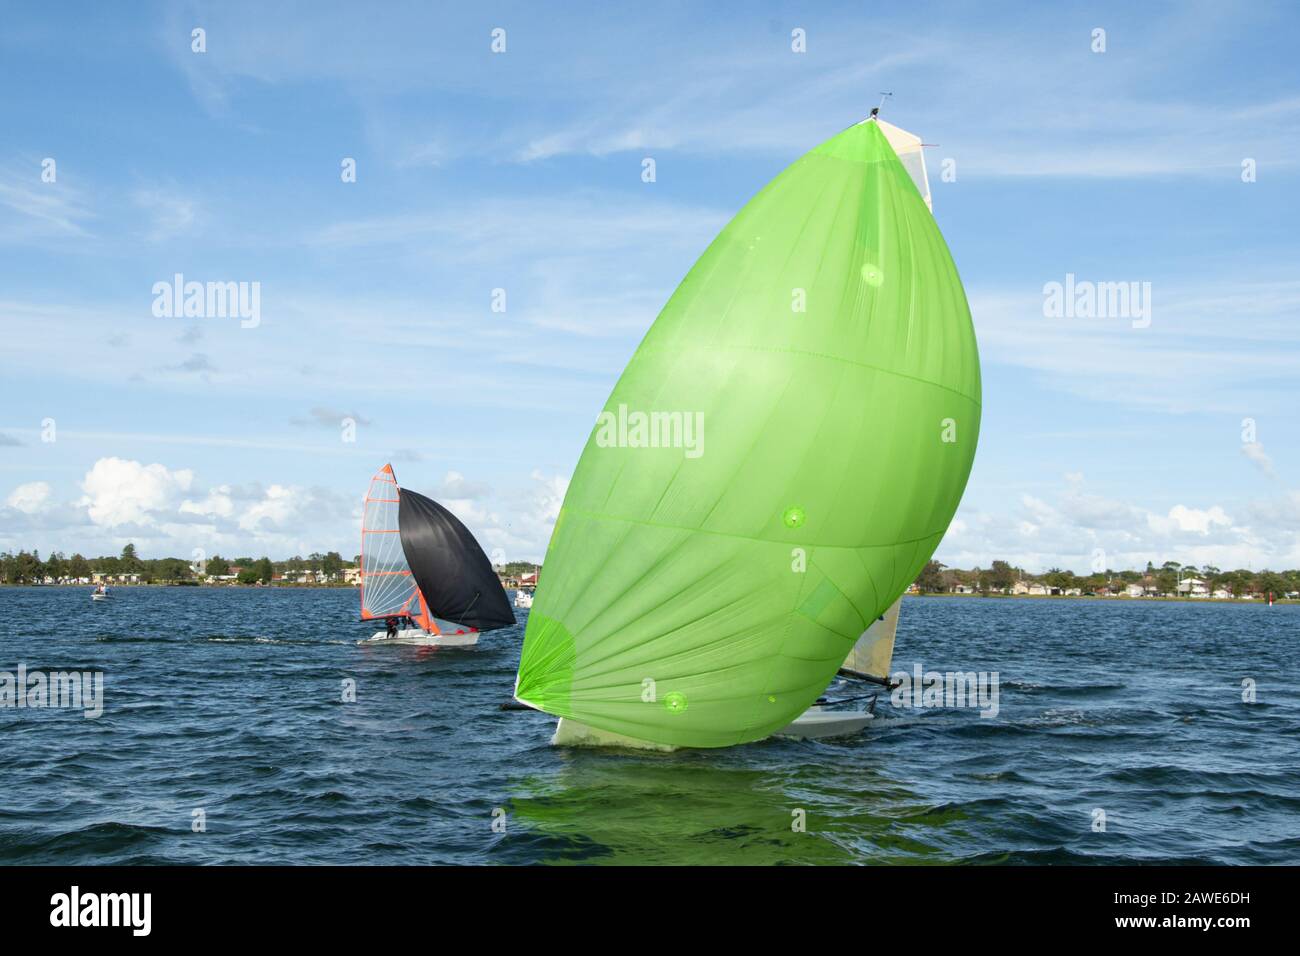 Les enfants naviguant sur un petit voilier se rapprochent avec un spinnaker vert citron entièrement déployé suivi d'un concurrent. Banque D'Images